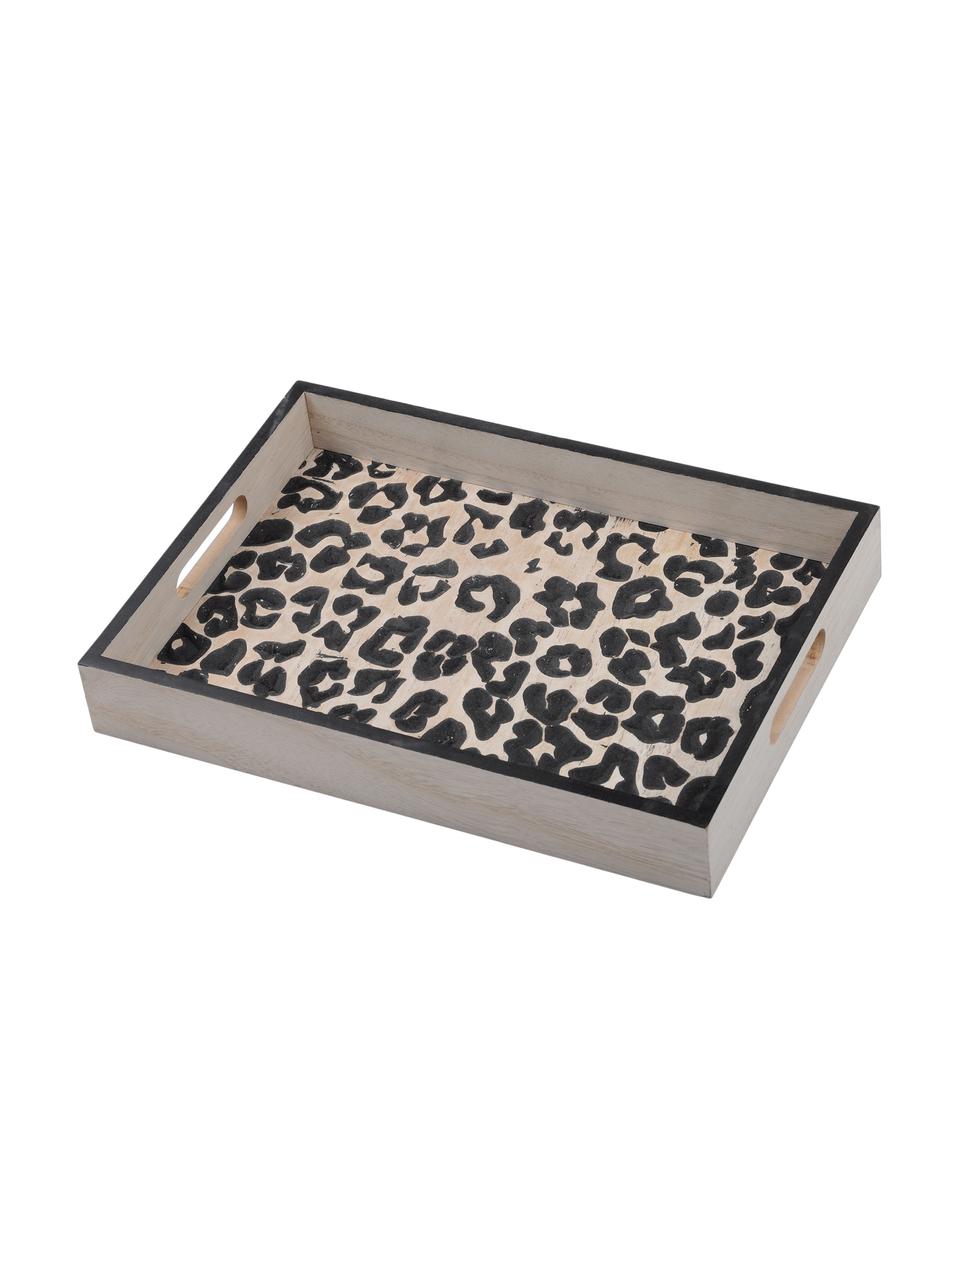 Servírovací podnos z dreva Leopard, D 35 x Š 25 cm, Béžová, čierna